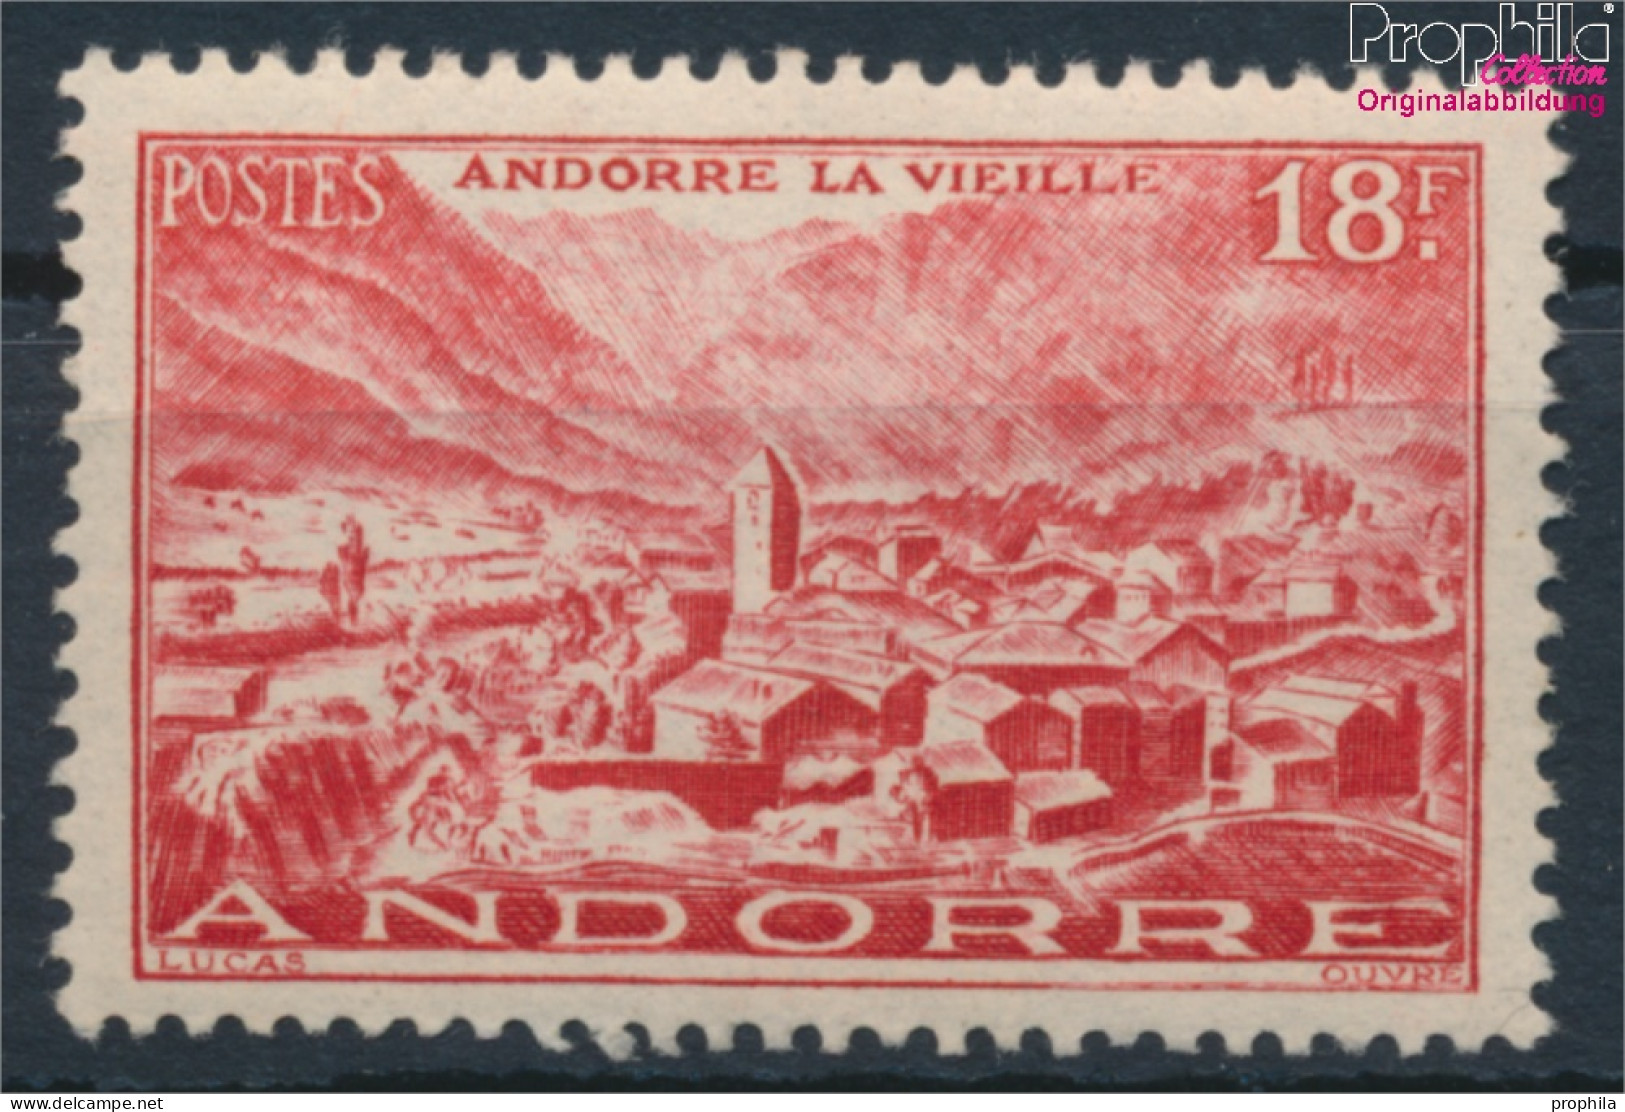 Andorra - Französische Post 133 Postfrisch 1944 Landschaften (10368400 - Nuevos